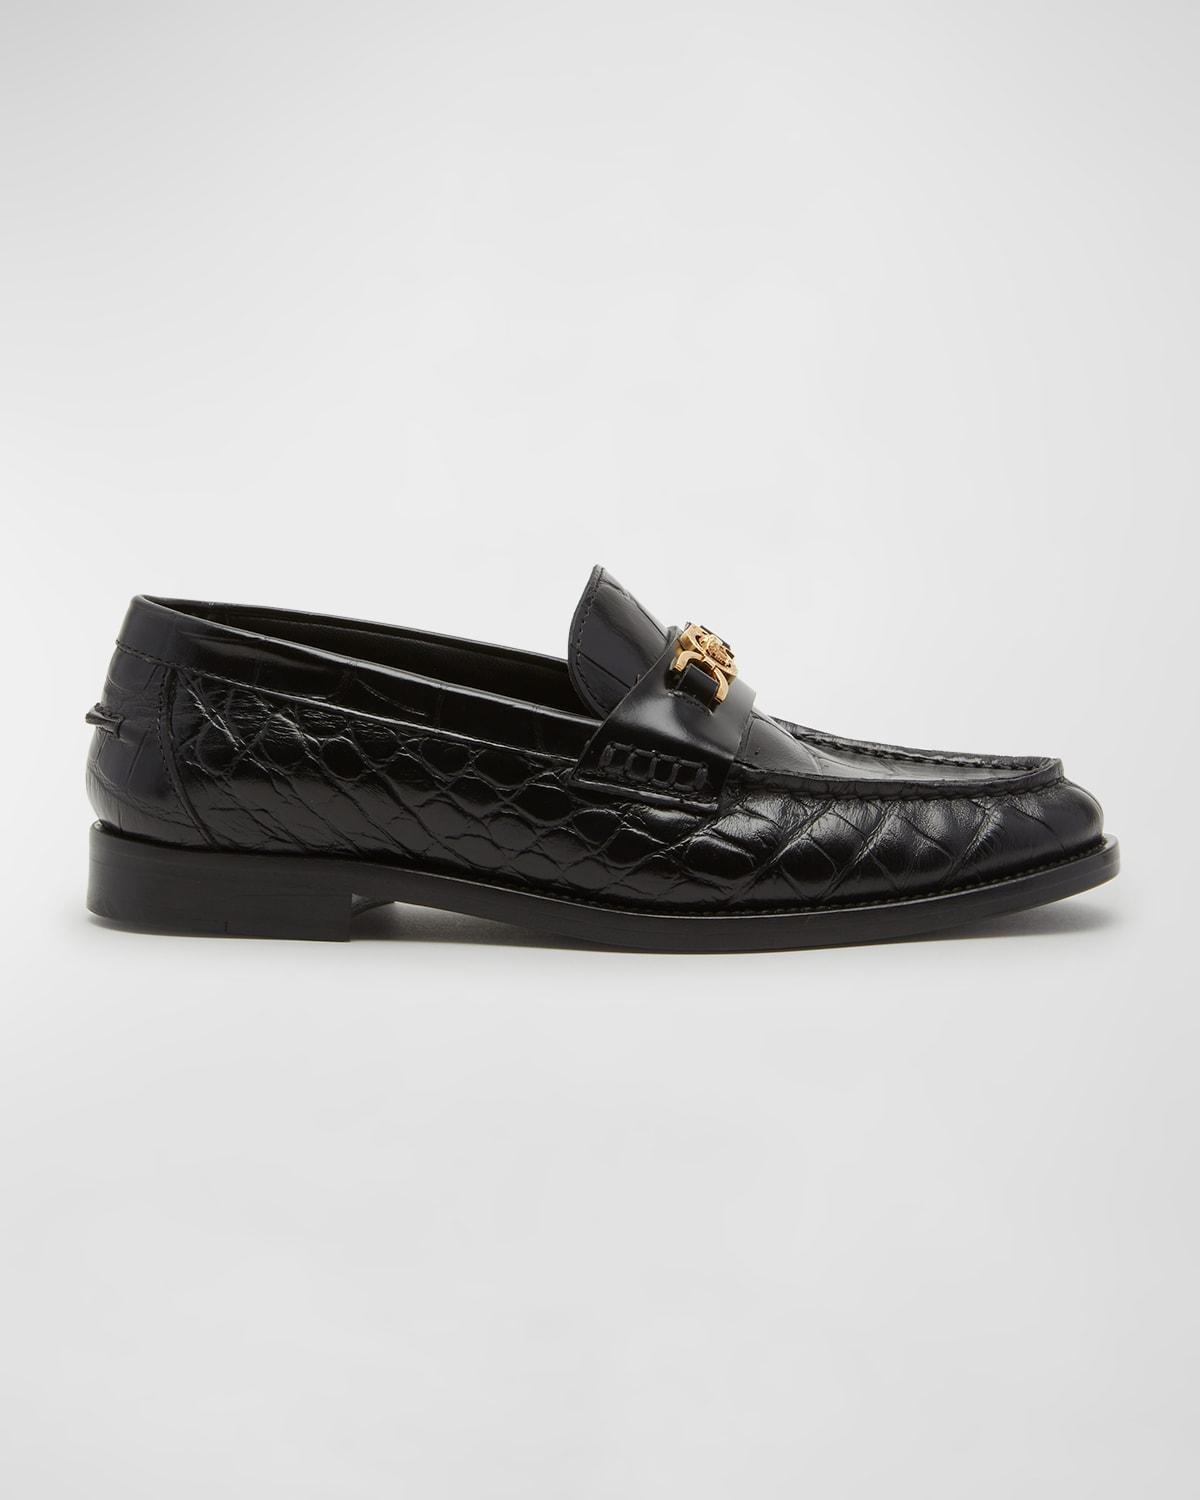 Medusa Croco Slip-On Loafers Product Image